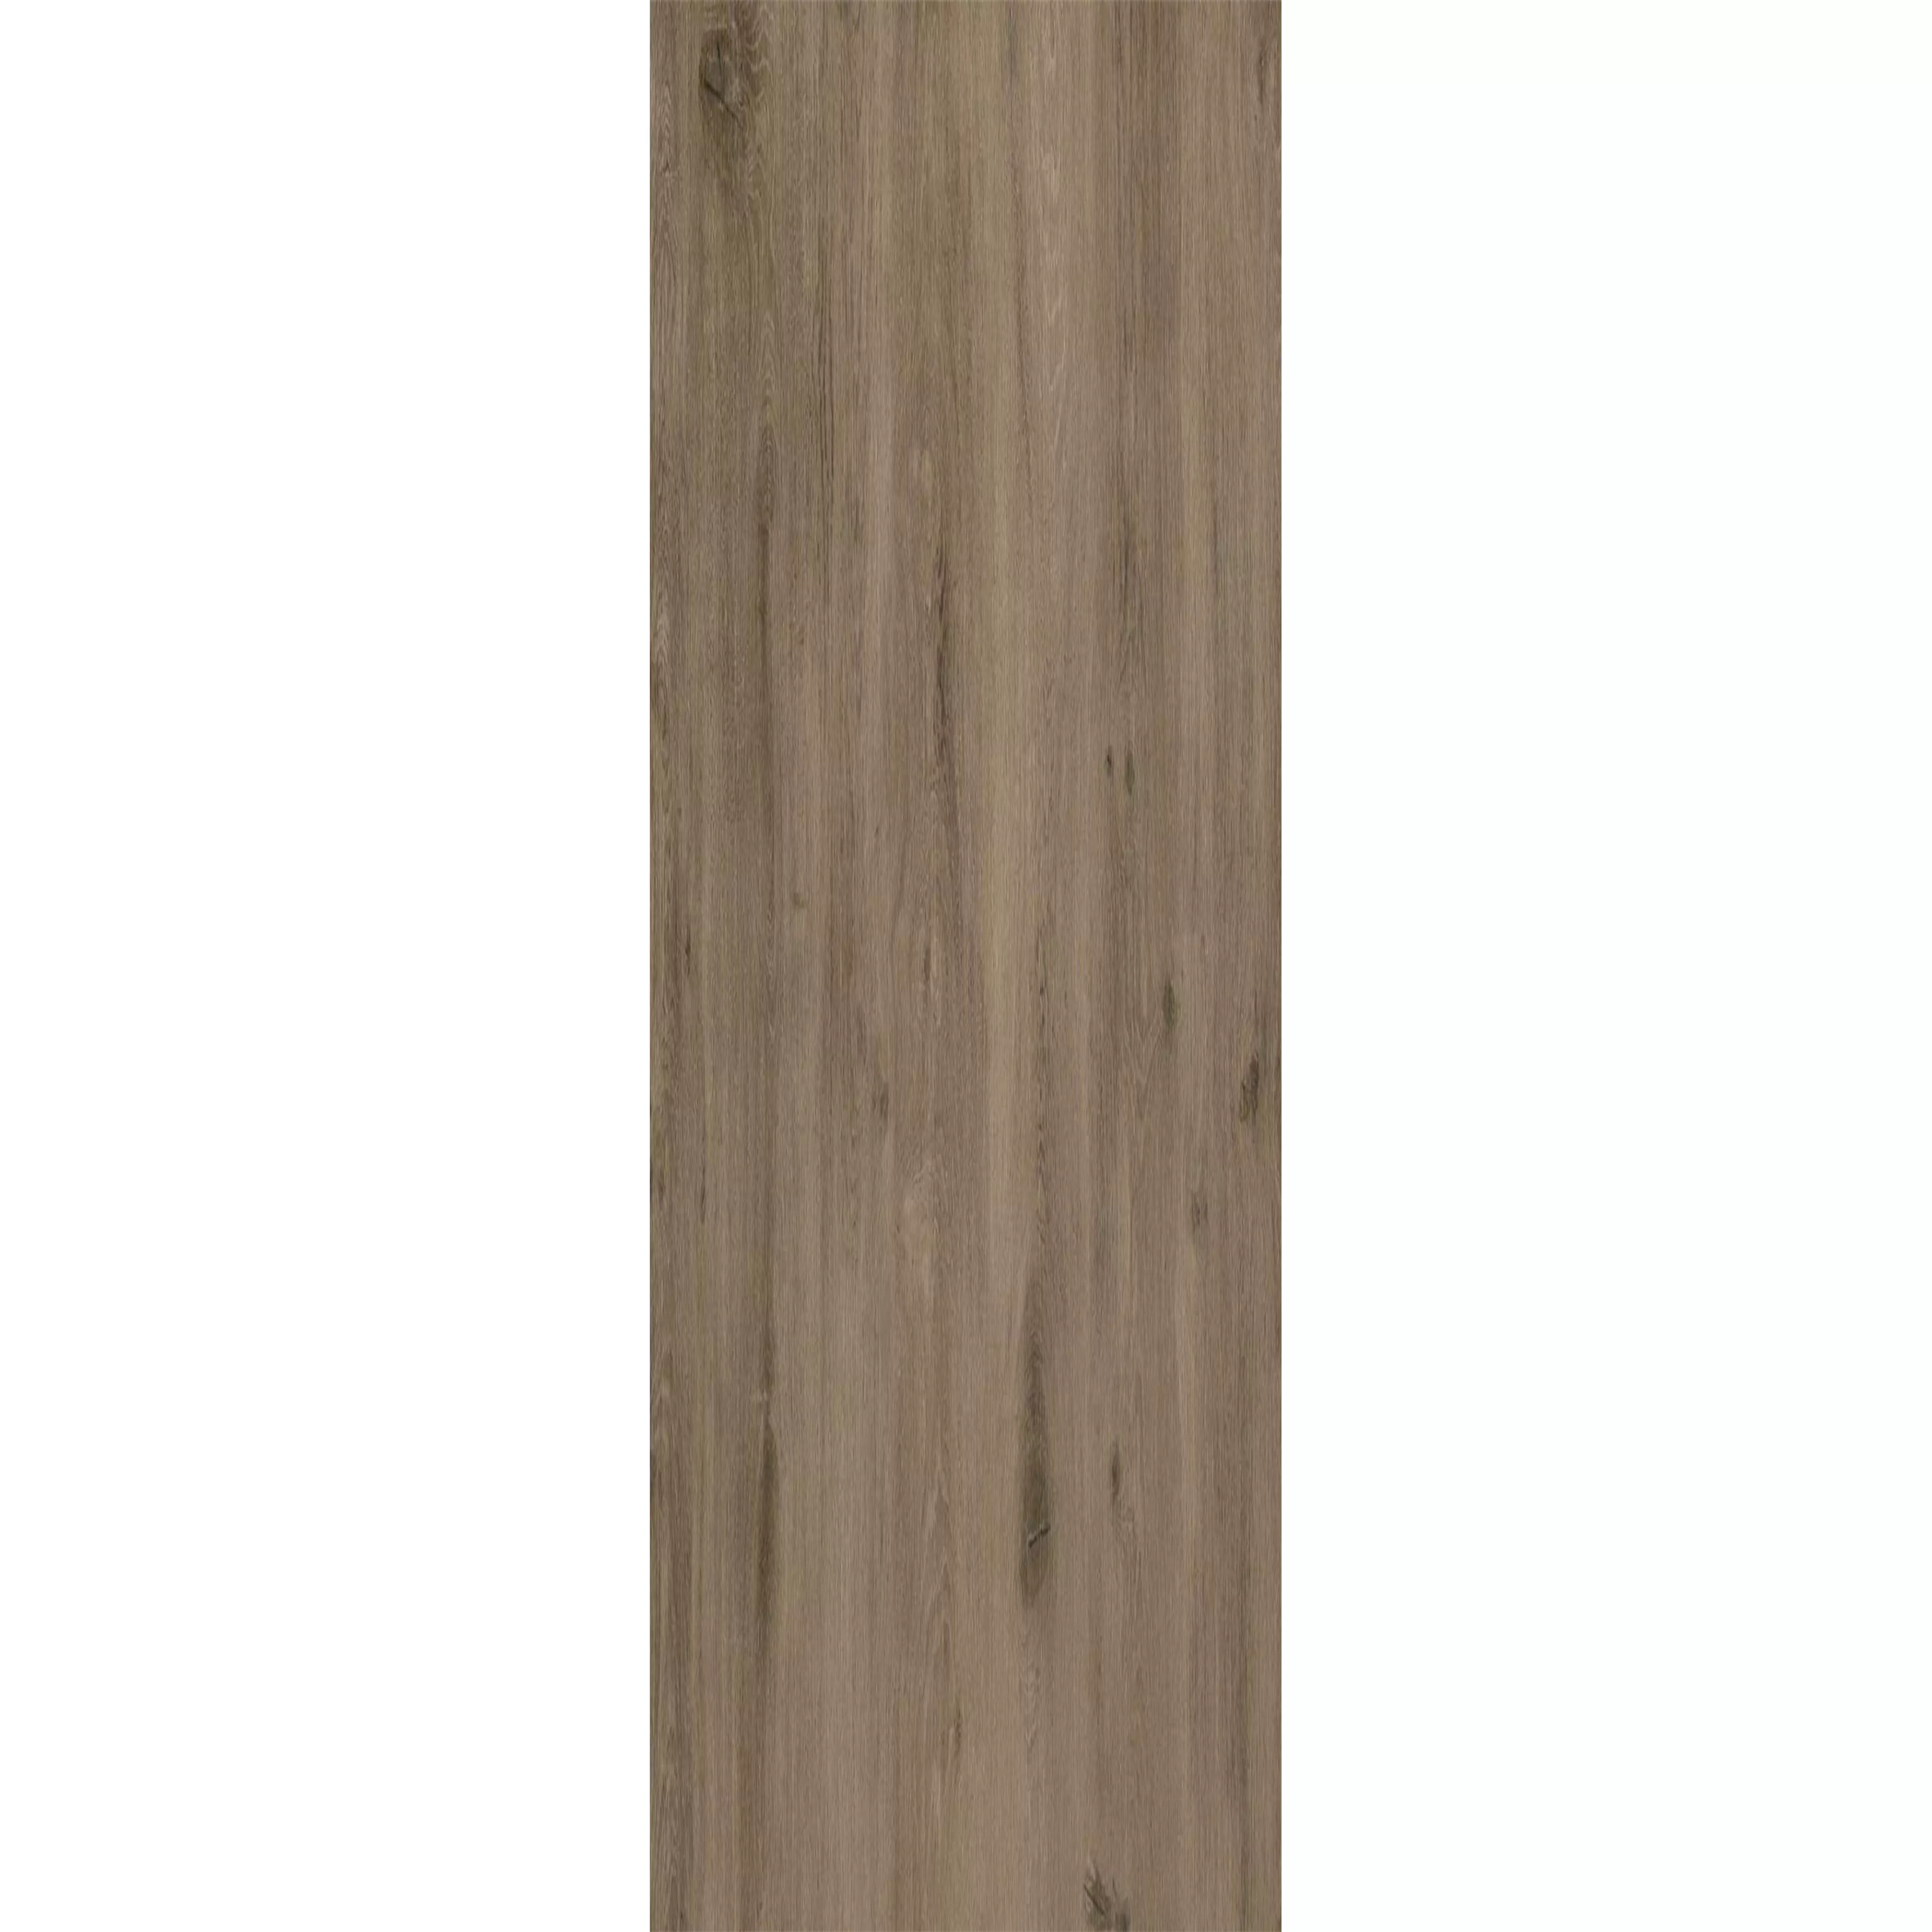 Piastrelle In Vinile Sistema A Clic Woodland Marrone Grigio 17,2x121cm